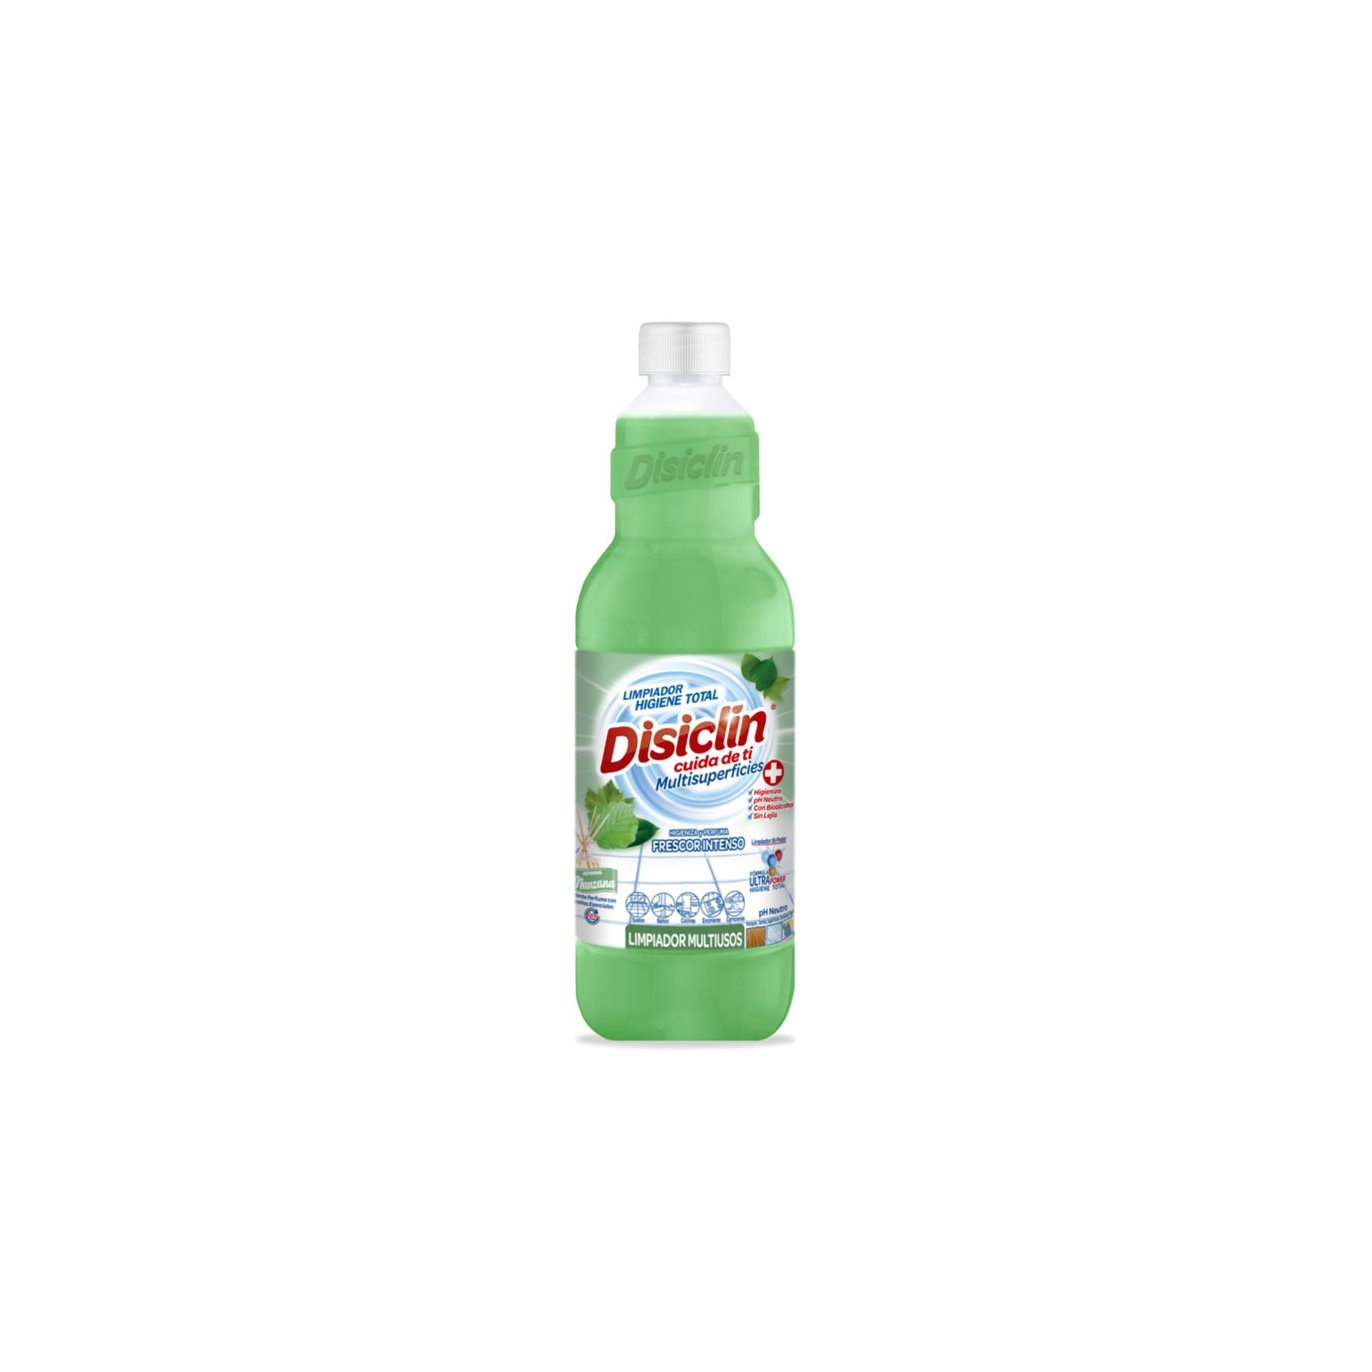 Tenemos otro desinfectante Disiclin. - Supermercado Morales